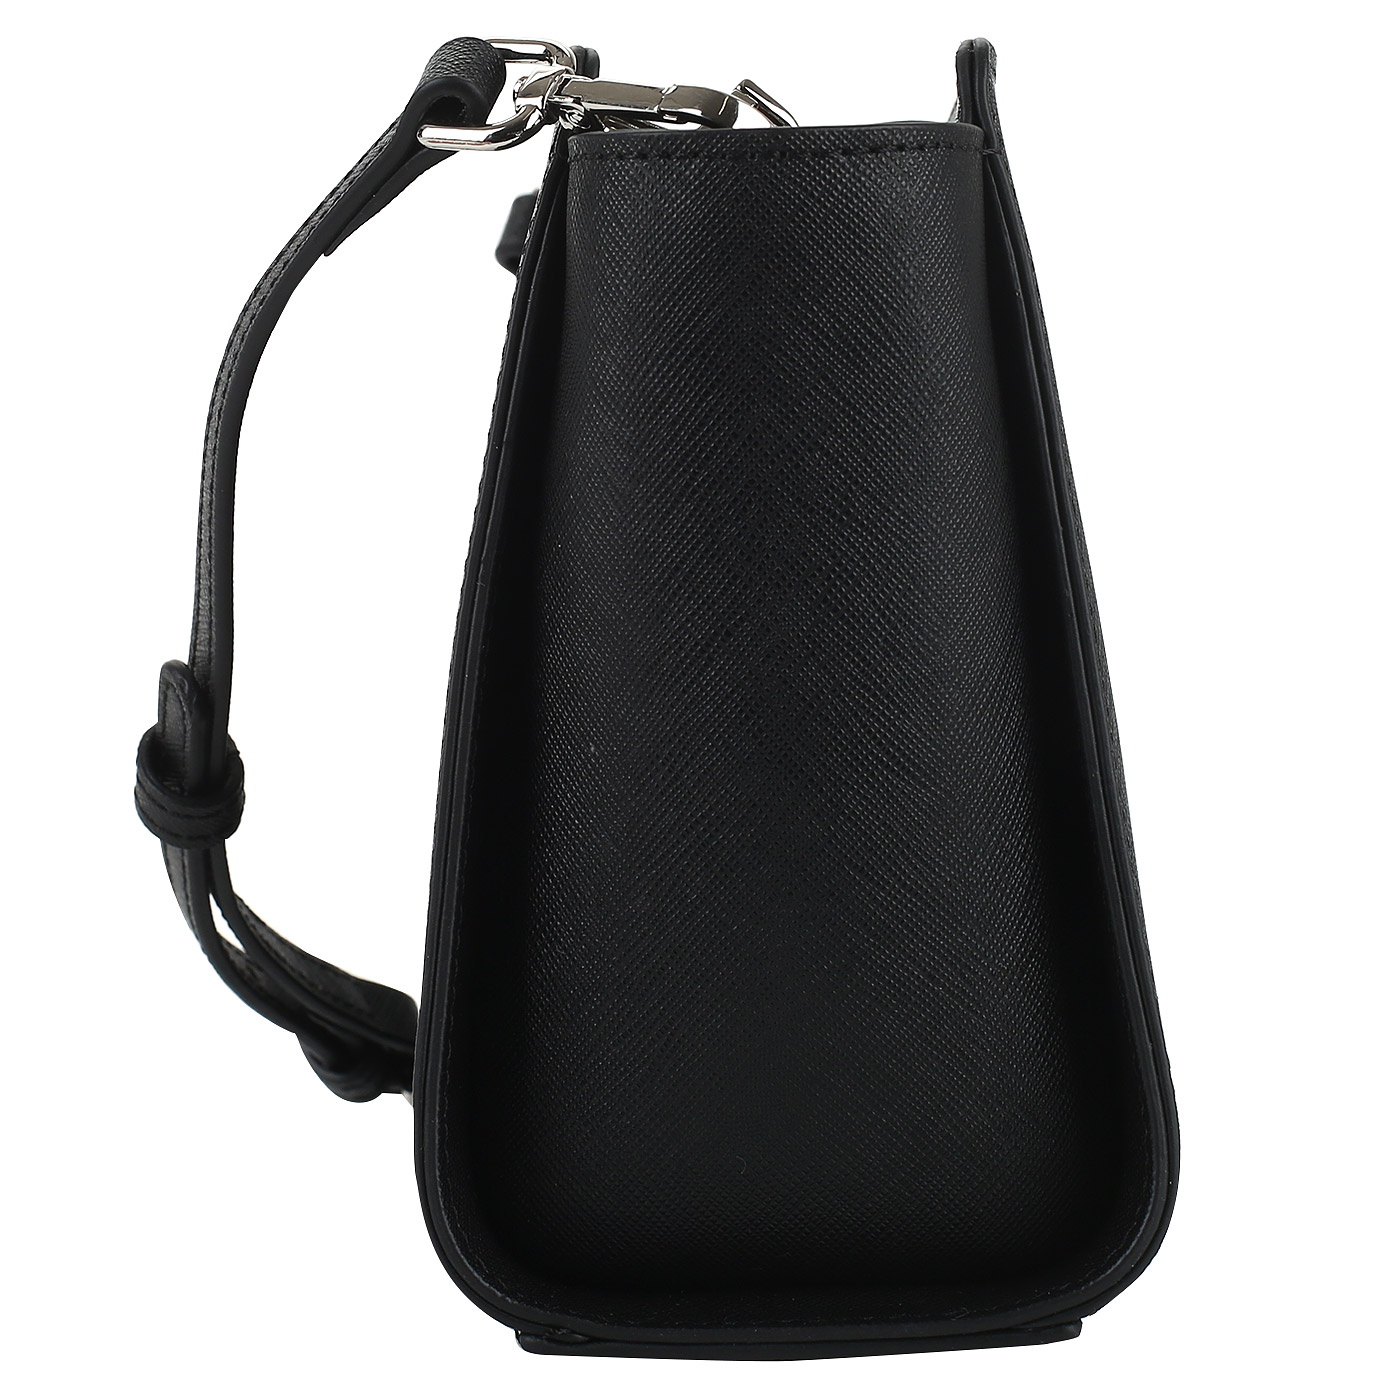 Черная сумочка на молнии Cromia Perla